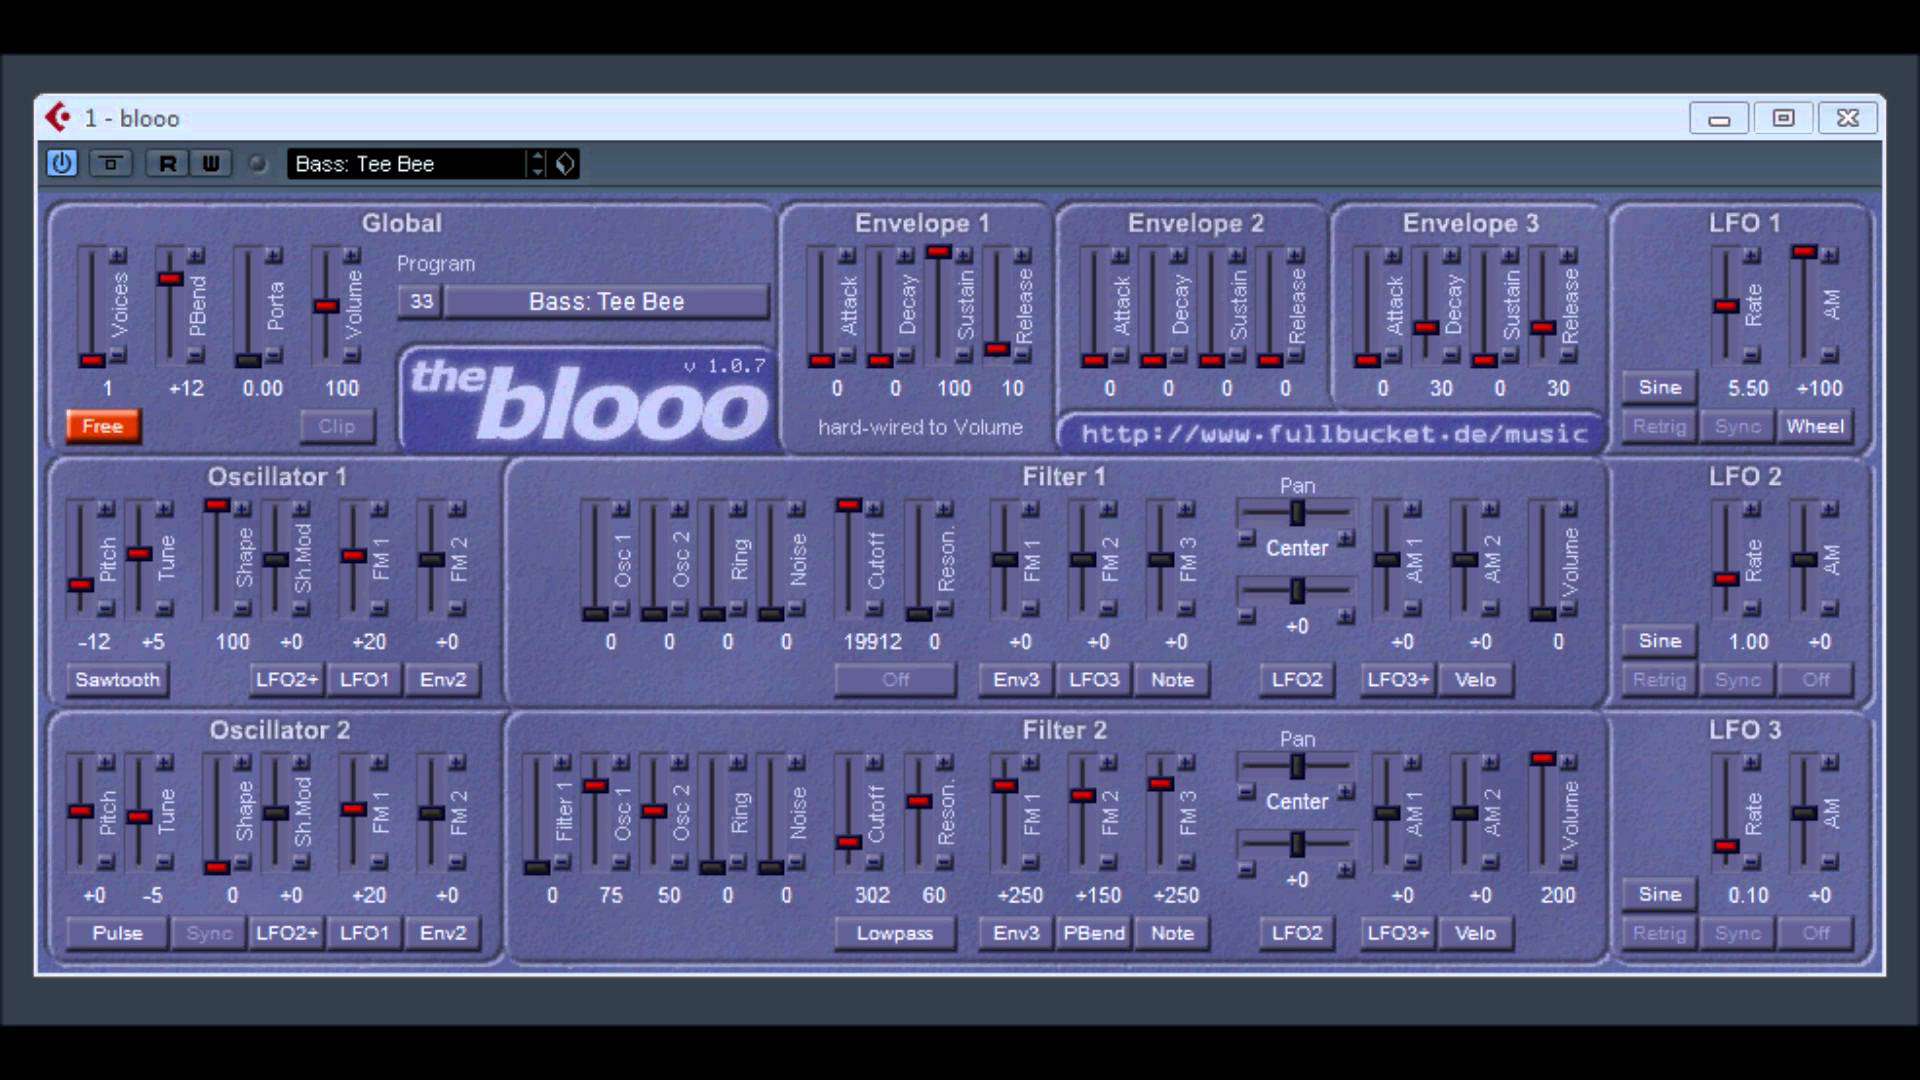 A screenshot of a blooo computer.